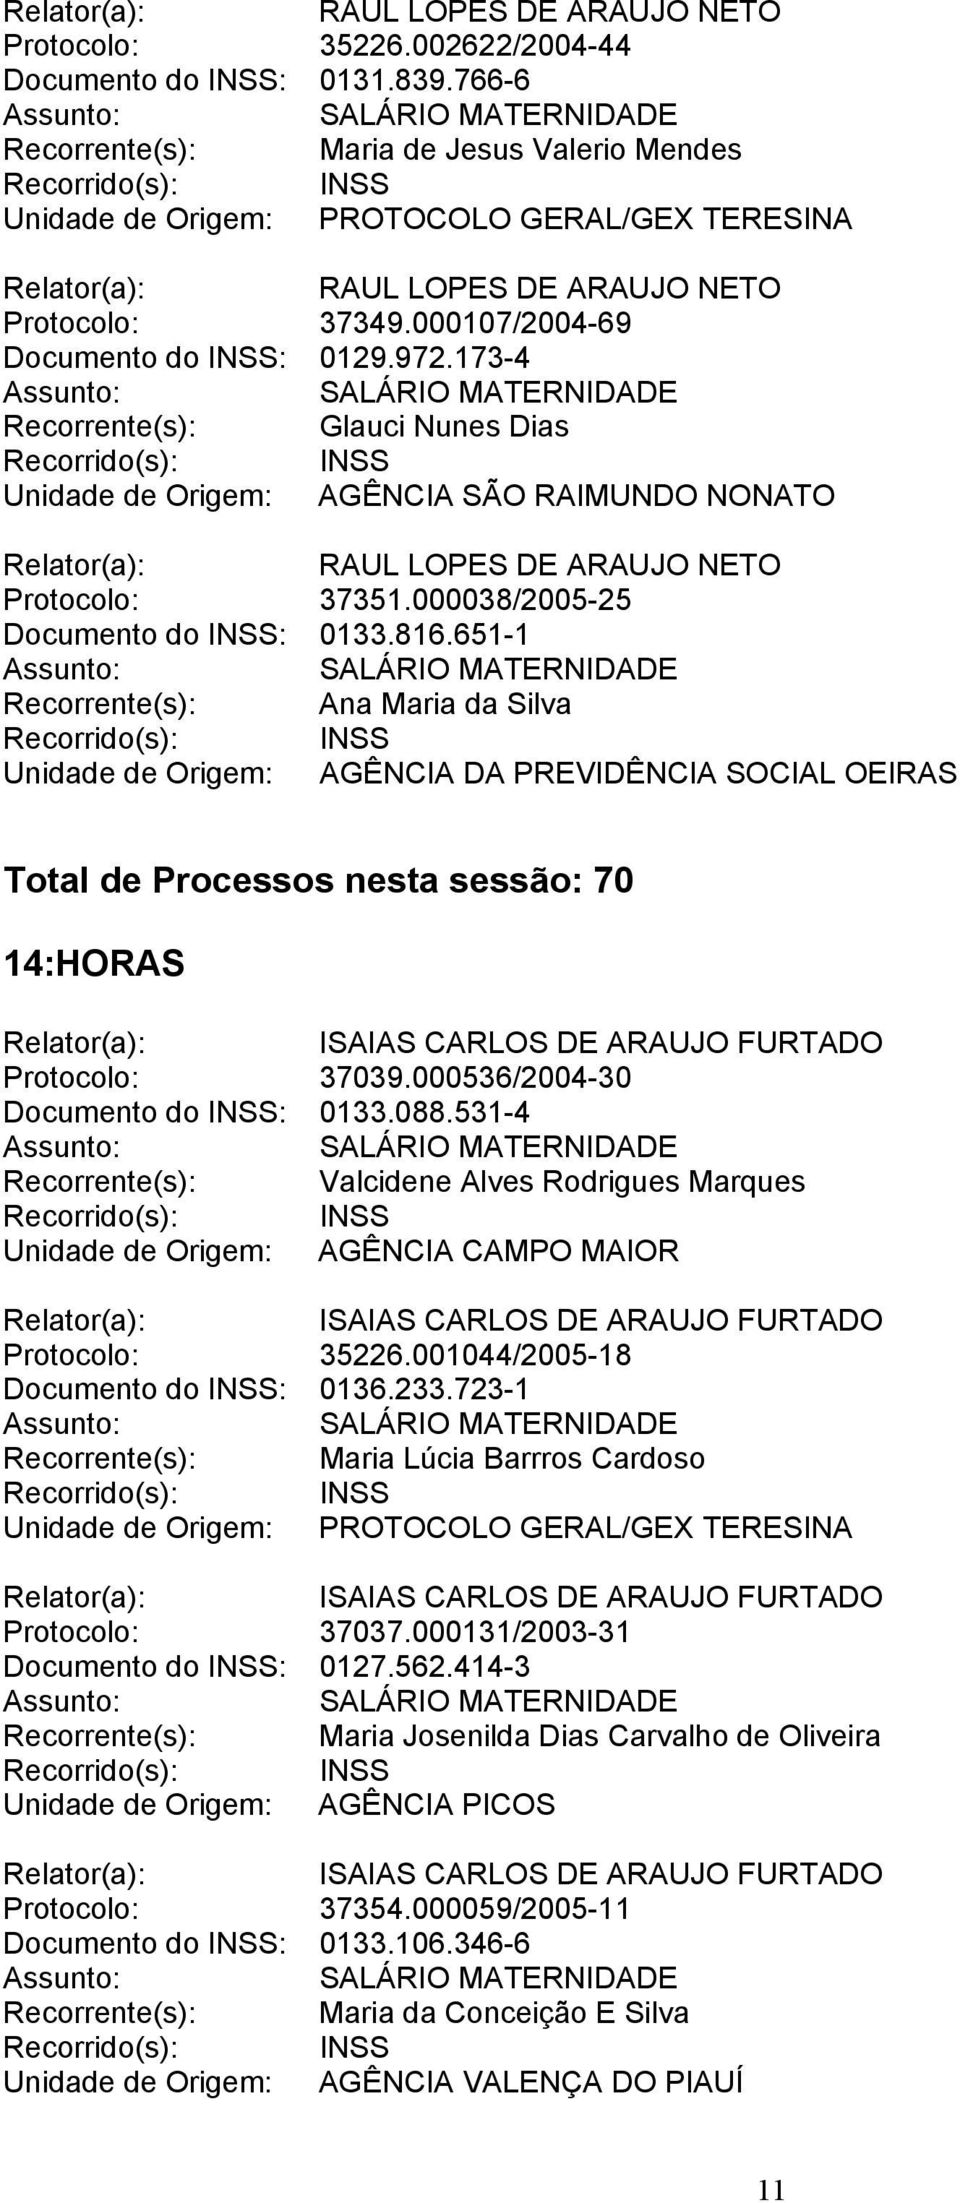 651-1 Recorrente(s): Ana Maria da Silva Total de Processos nesta sessão: 70 14:HORAS Protocolo: 37039.000536/2004-30 Documento do INSS: 0133.088.